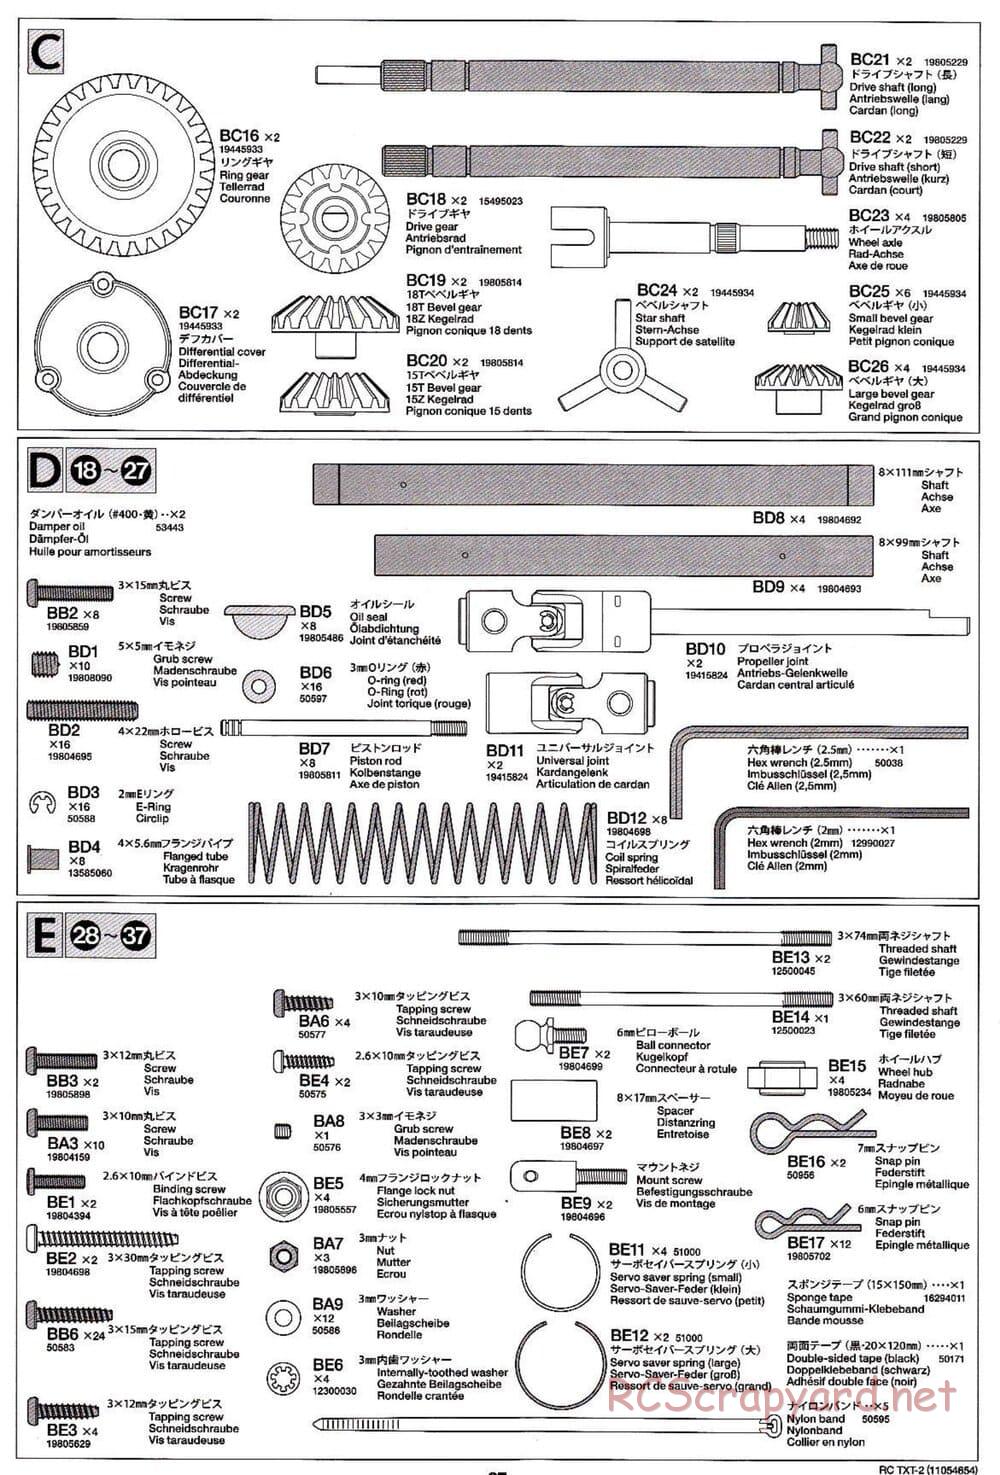 Tamiya - TXT-2 Chassis - Manual - Page 27